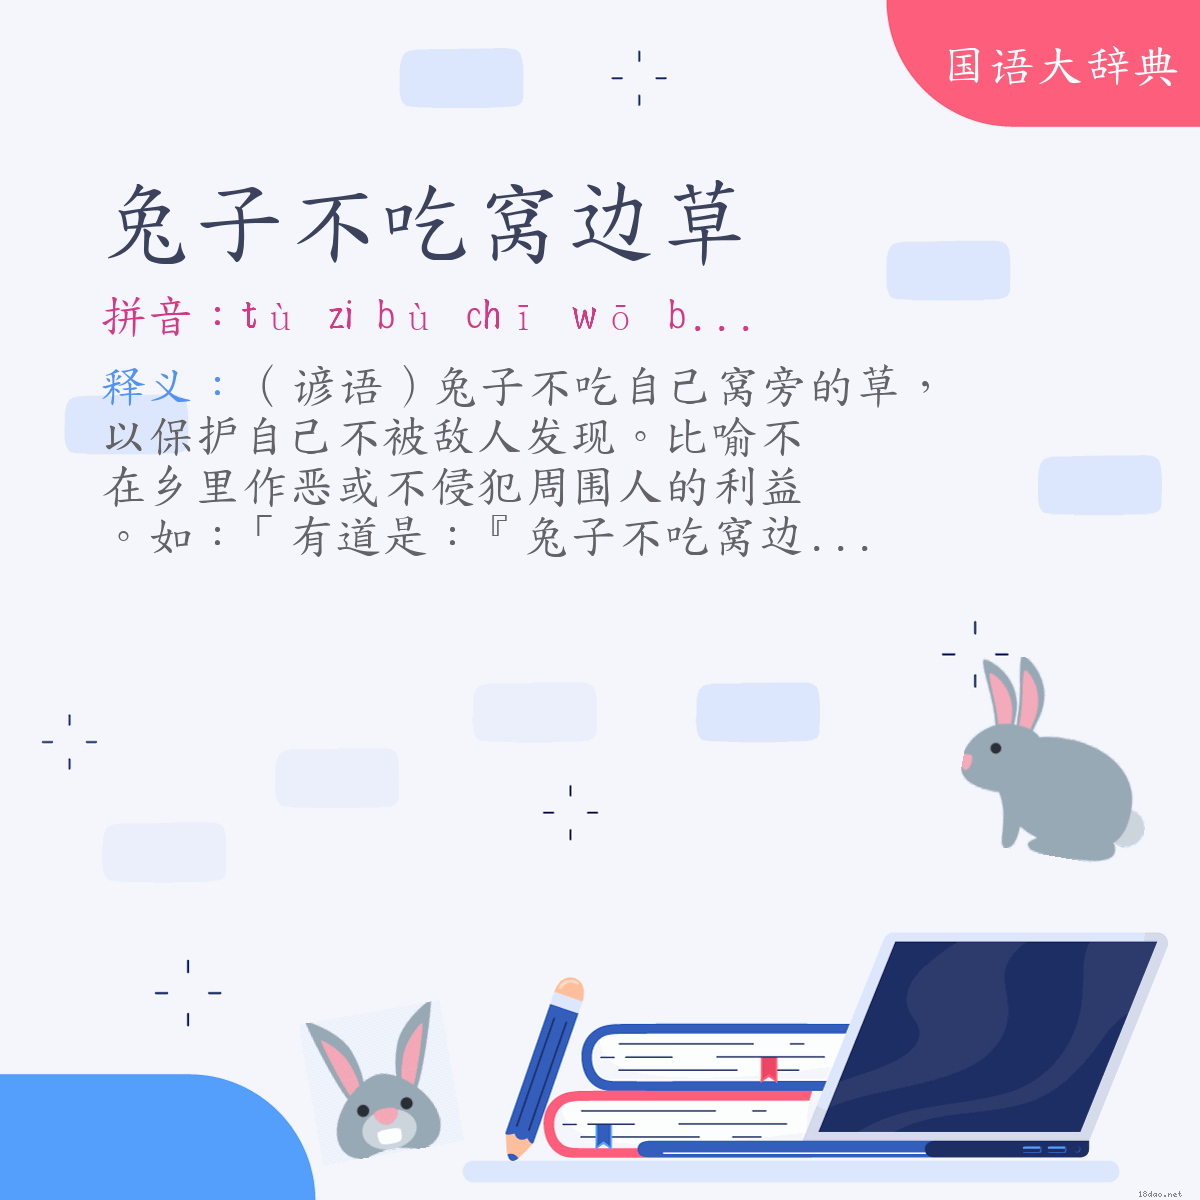 词语:兔子不吃窝边草 (注音:ㄊㄨˋ　˙ㄗ　ㄅㄨˋ　ㄔ　ㄨㄛ　ㄅㄧㄢ　ㄘㄠˇ)